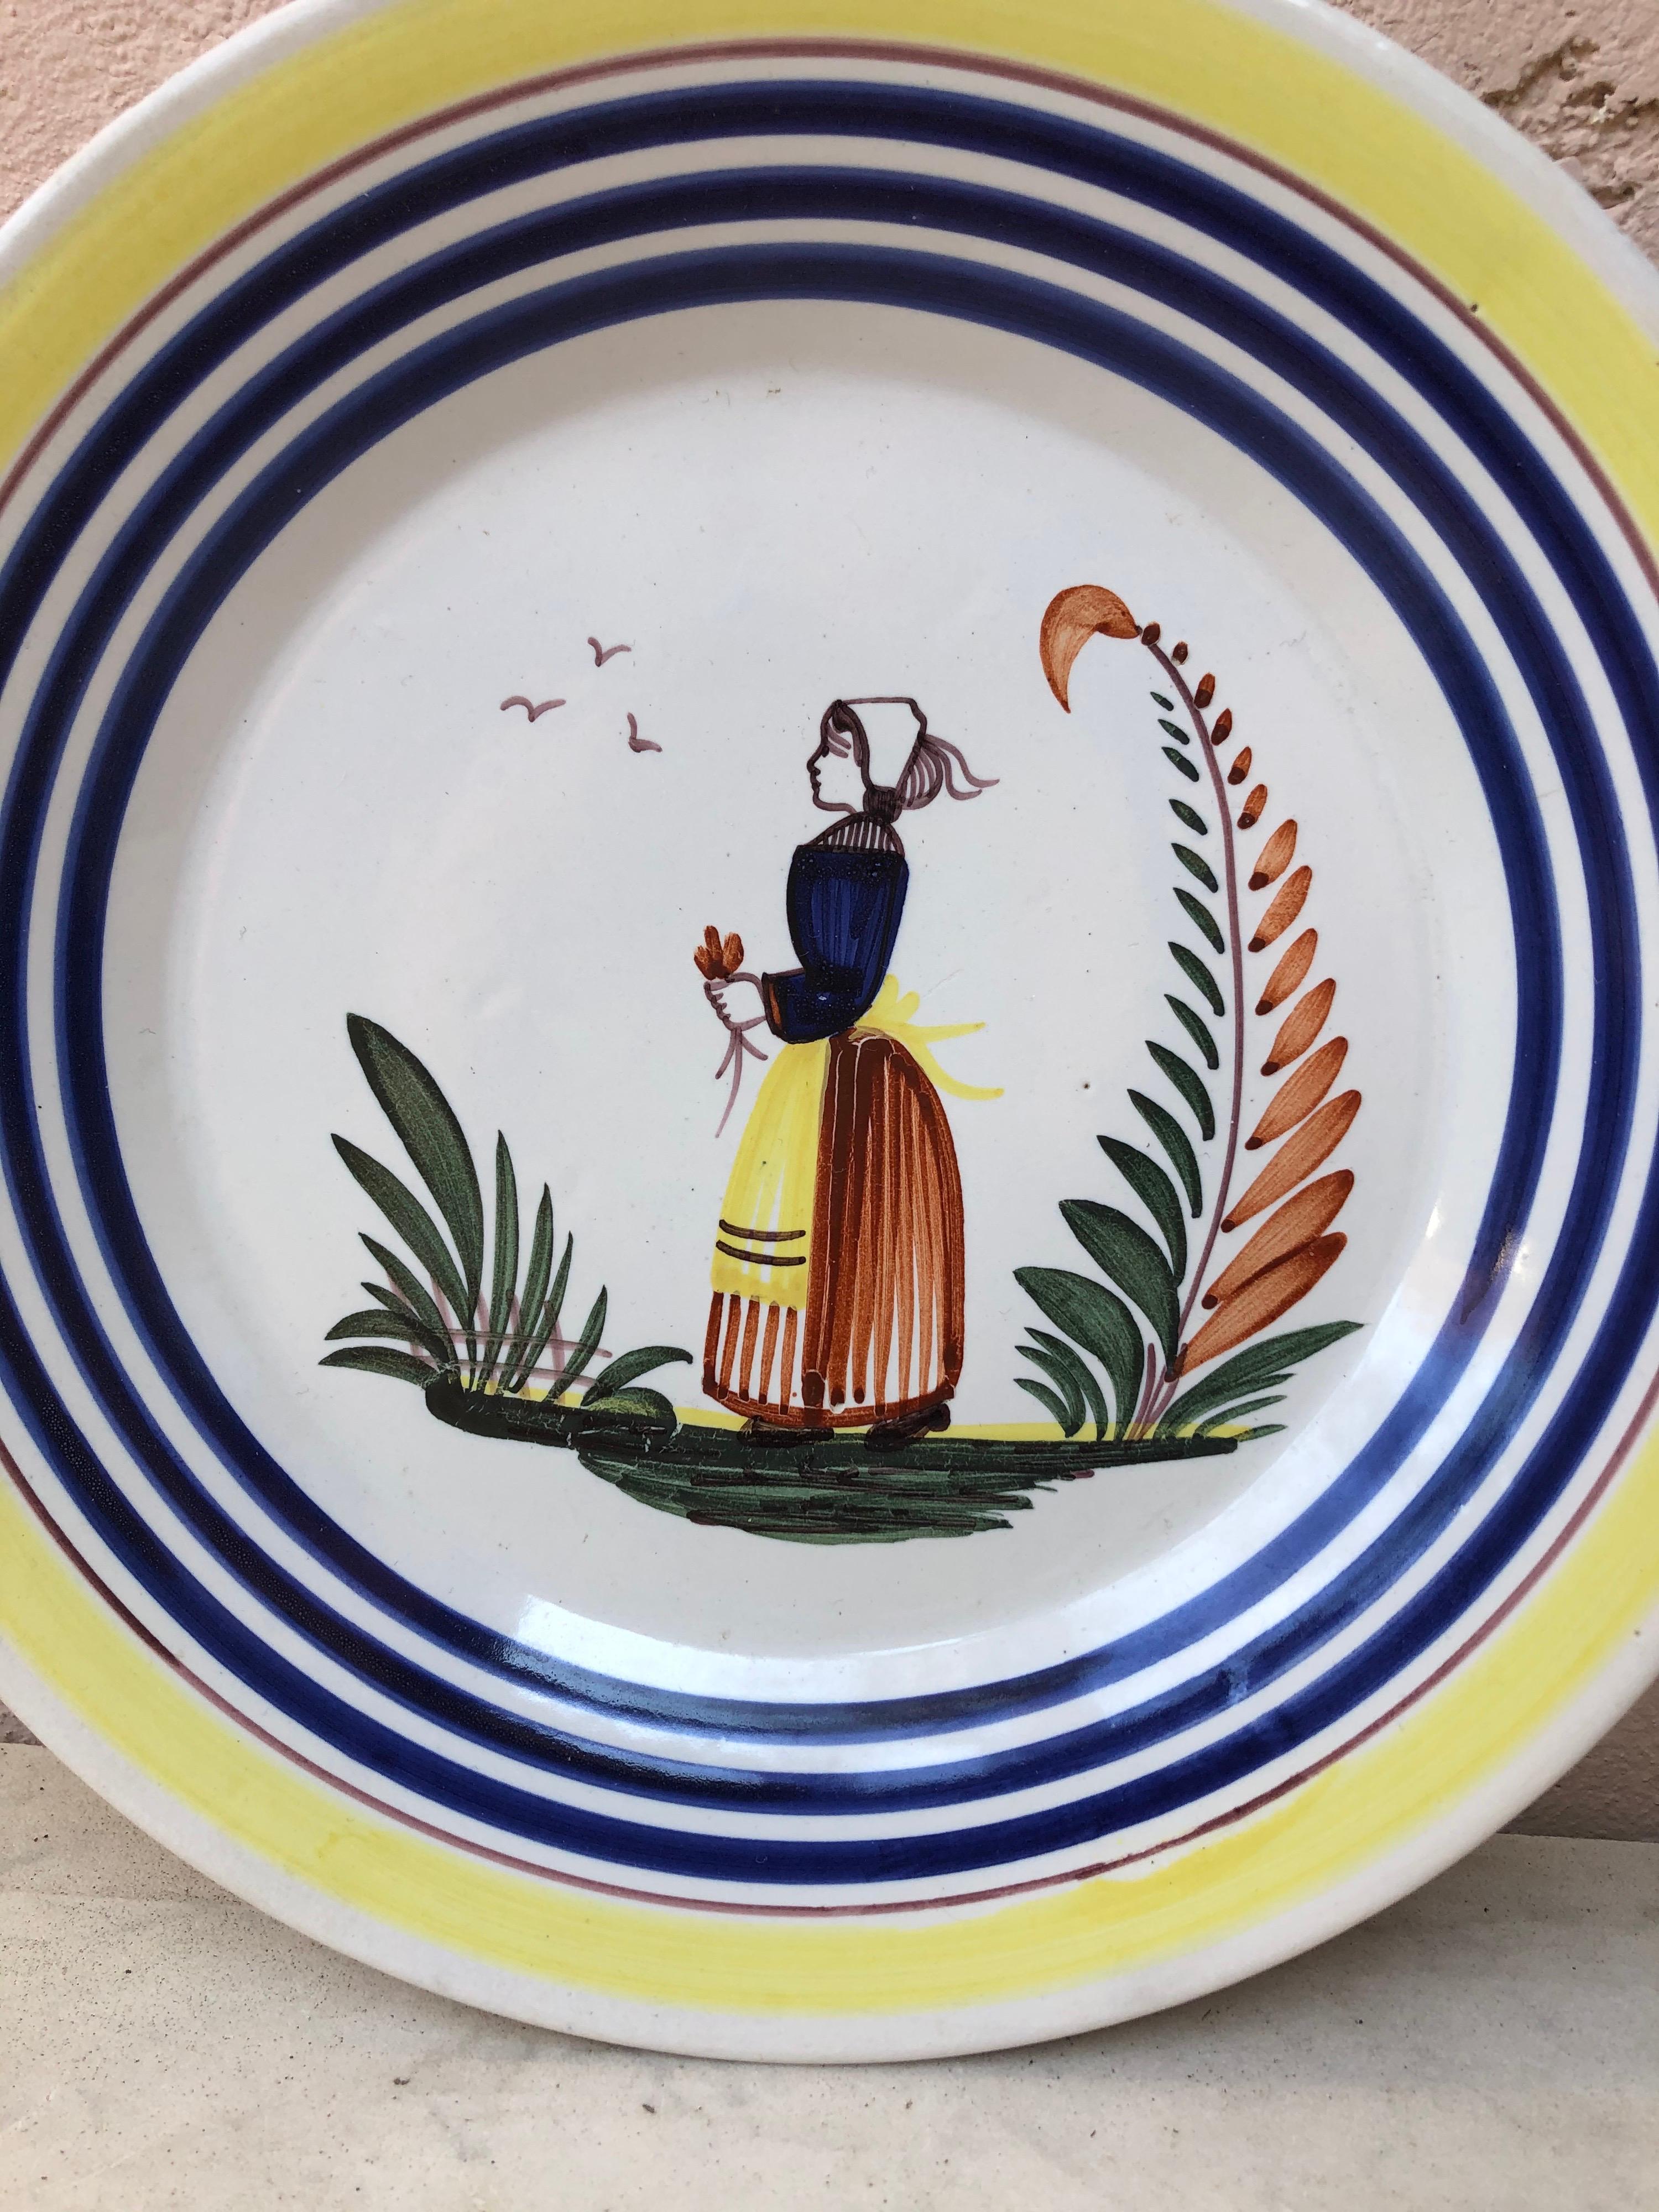 Une grande assiette en faïence française avec un fermier en costume avec des fleurs signée Henriot Quimper, vers 1950.
Bordure jaune colorée et lignes bleues.
Mesure : 9,5 de diamètre.